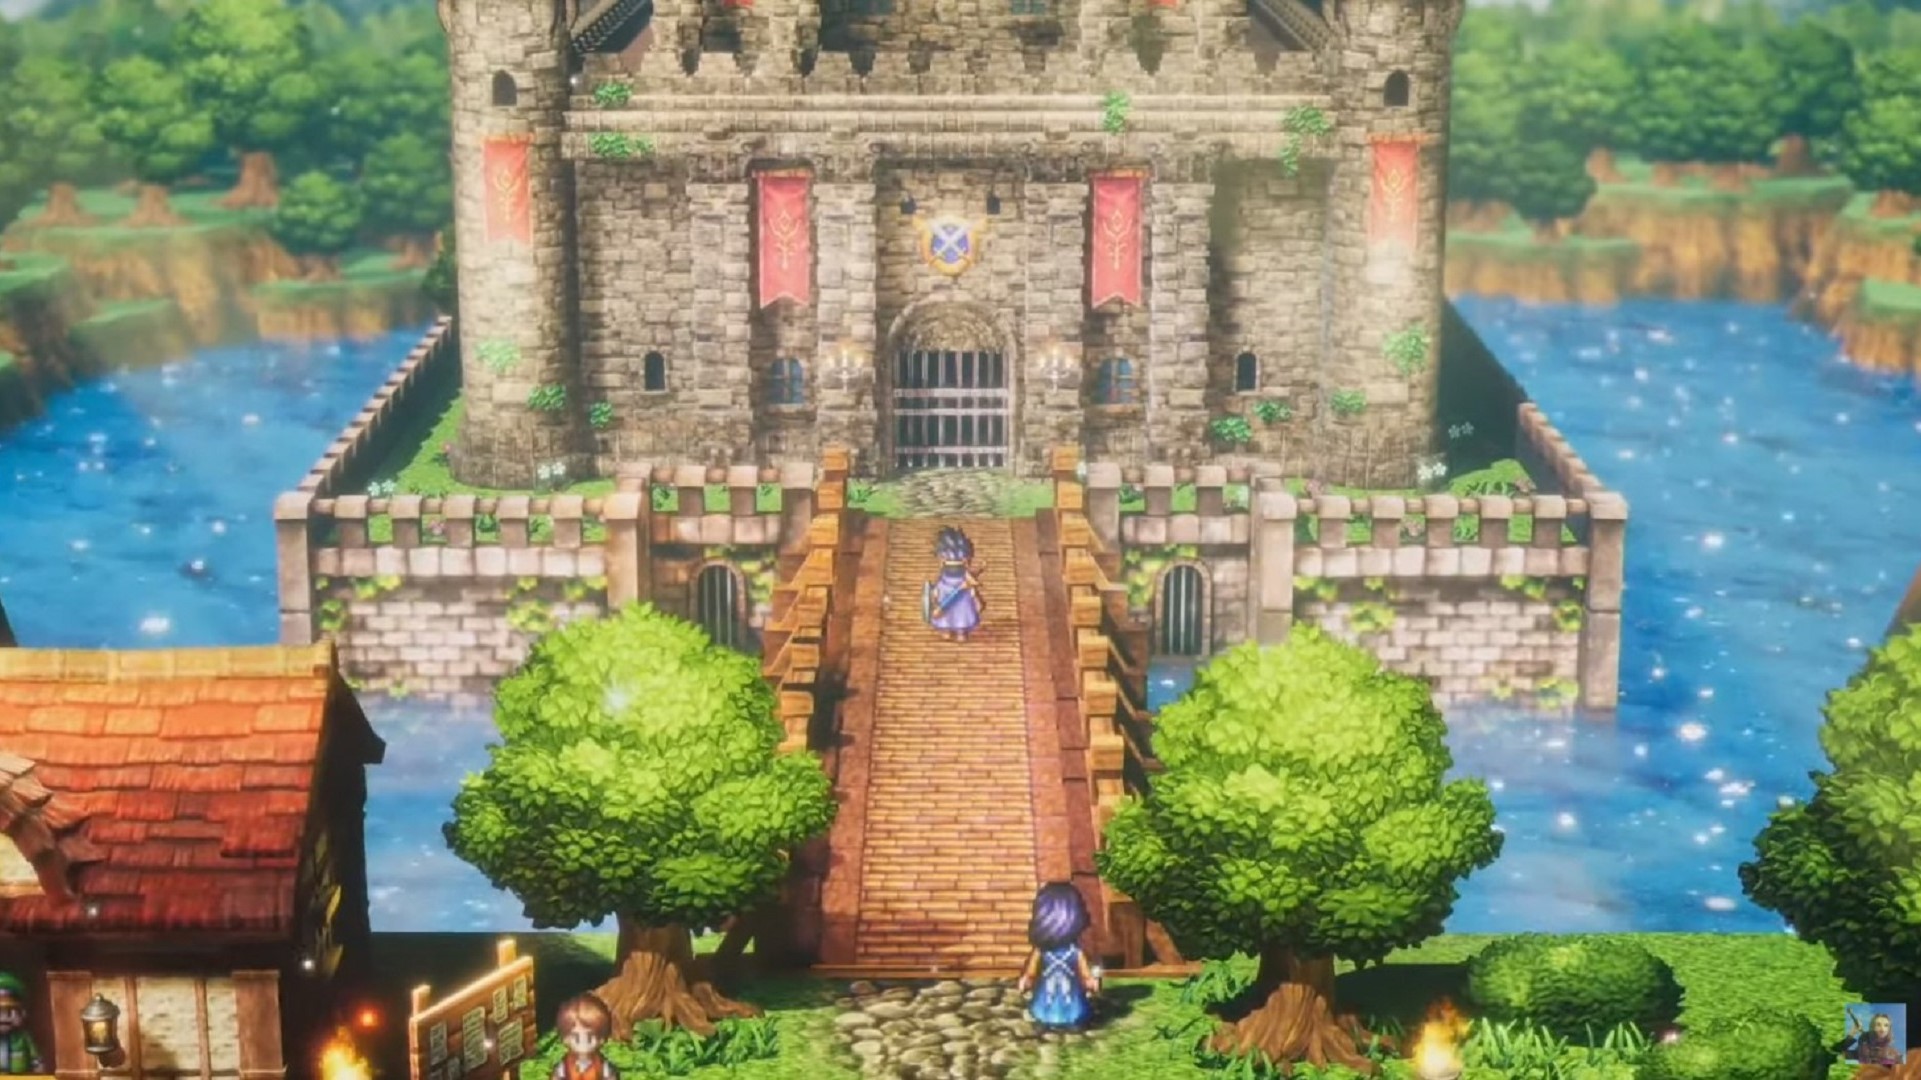 Imatge de remake en 3D d'Hd de Dragon Quest 2